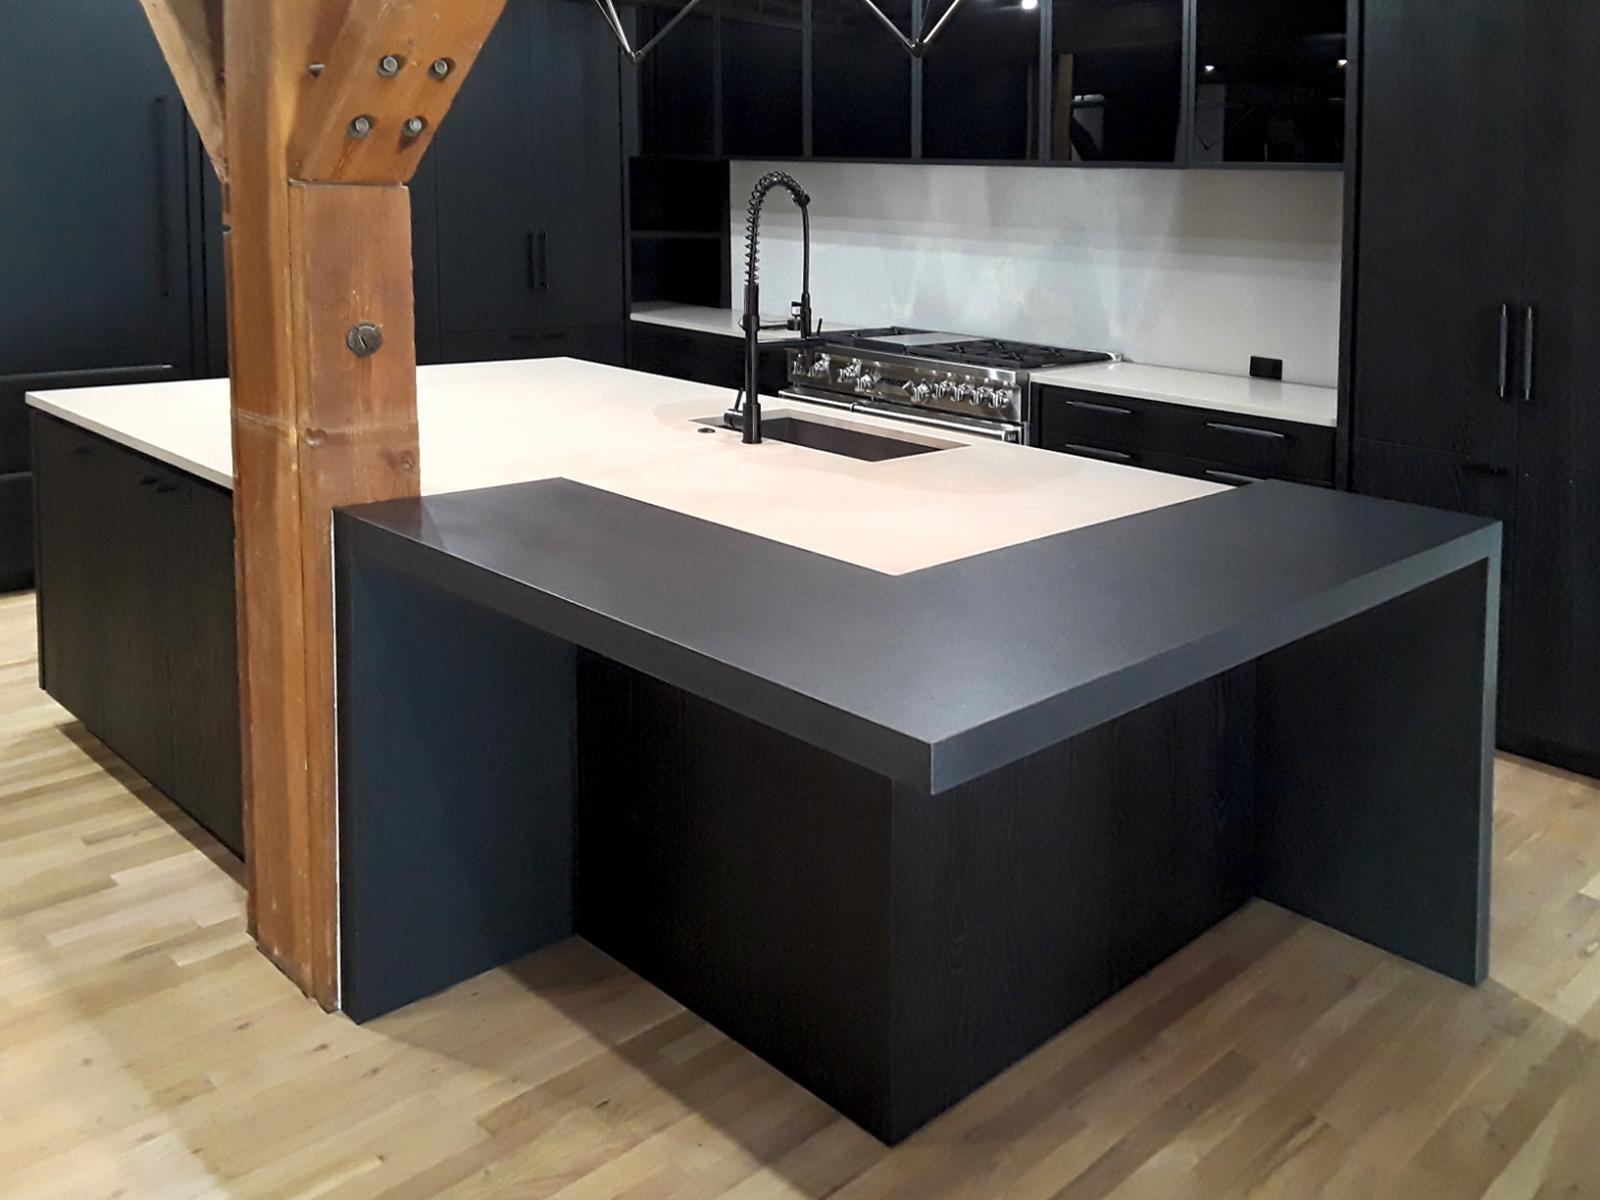 Black and White quartz kitchen countertops